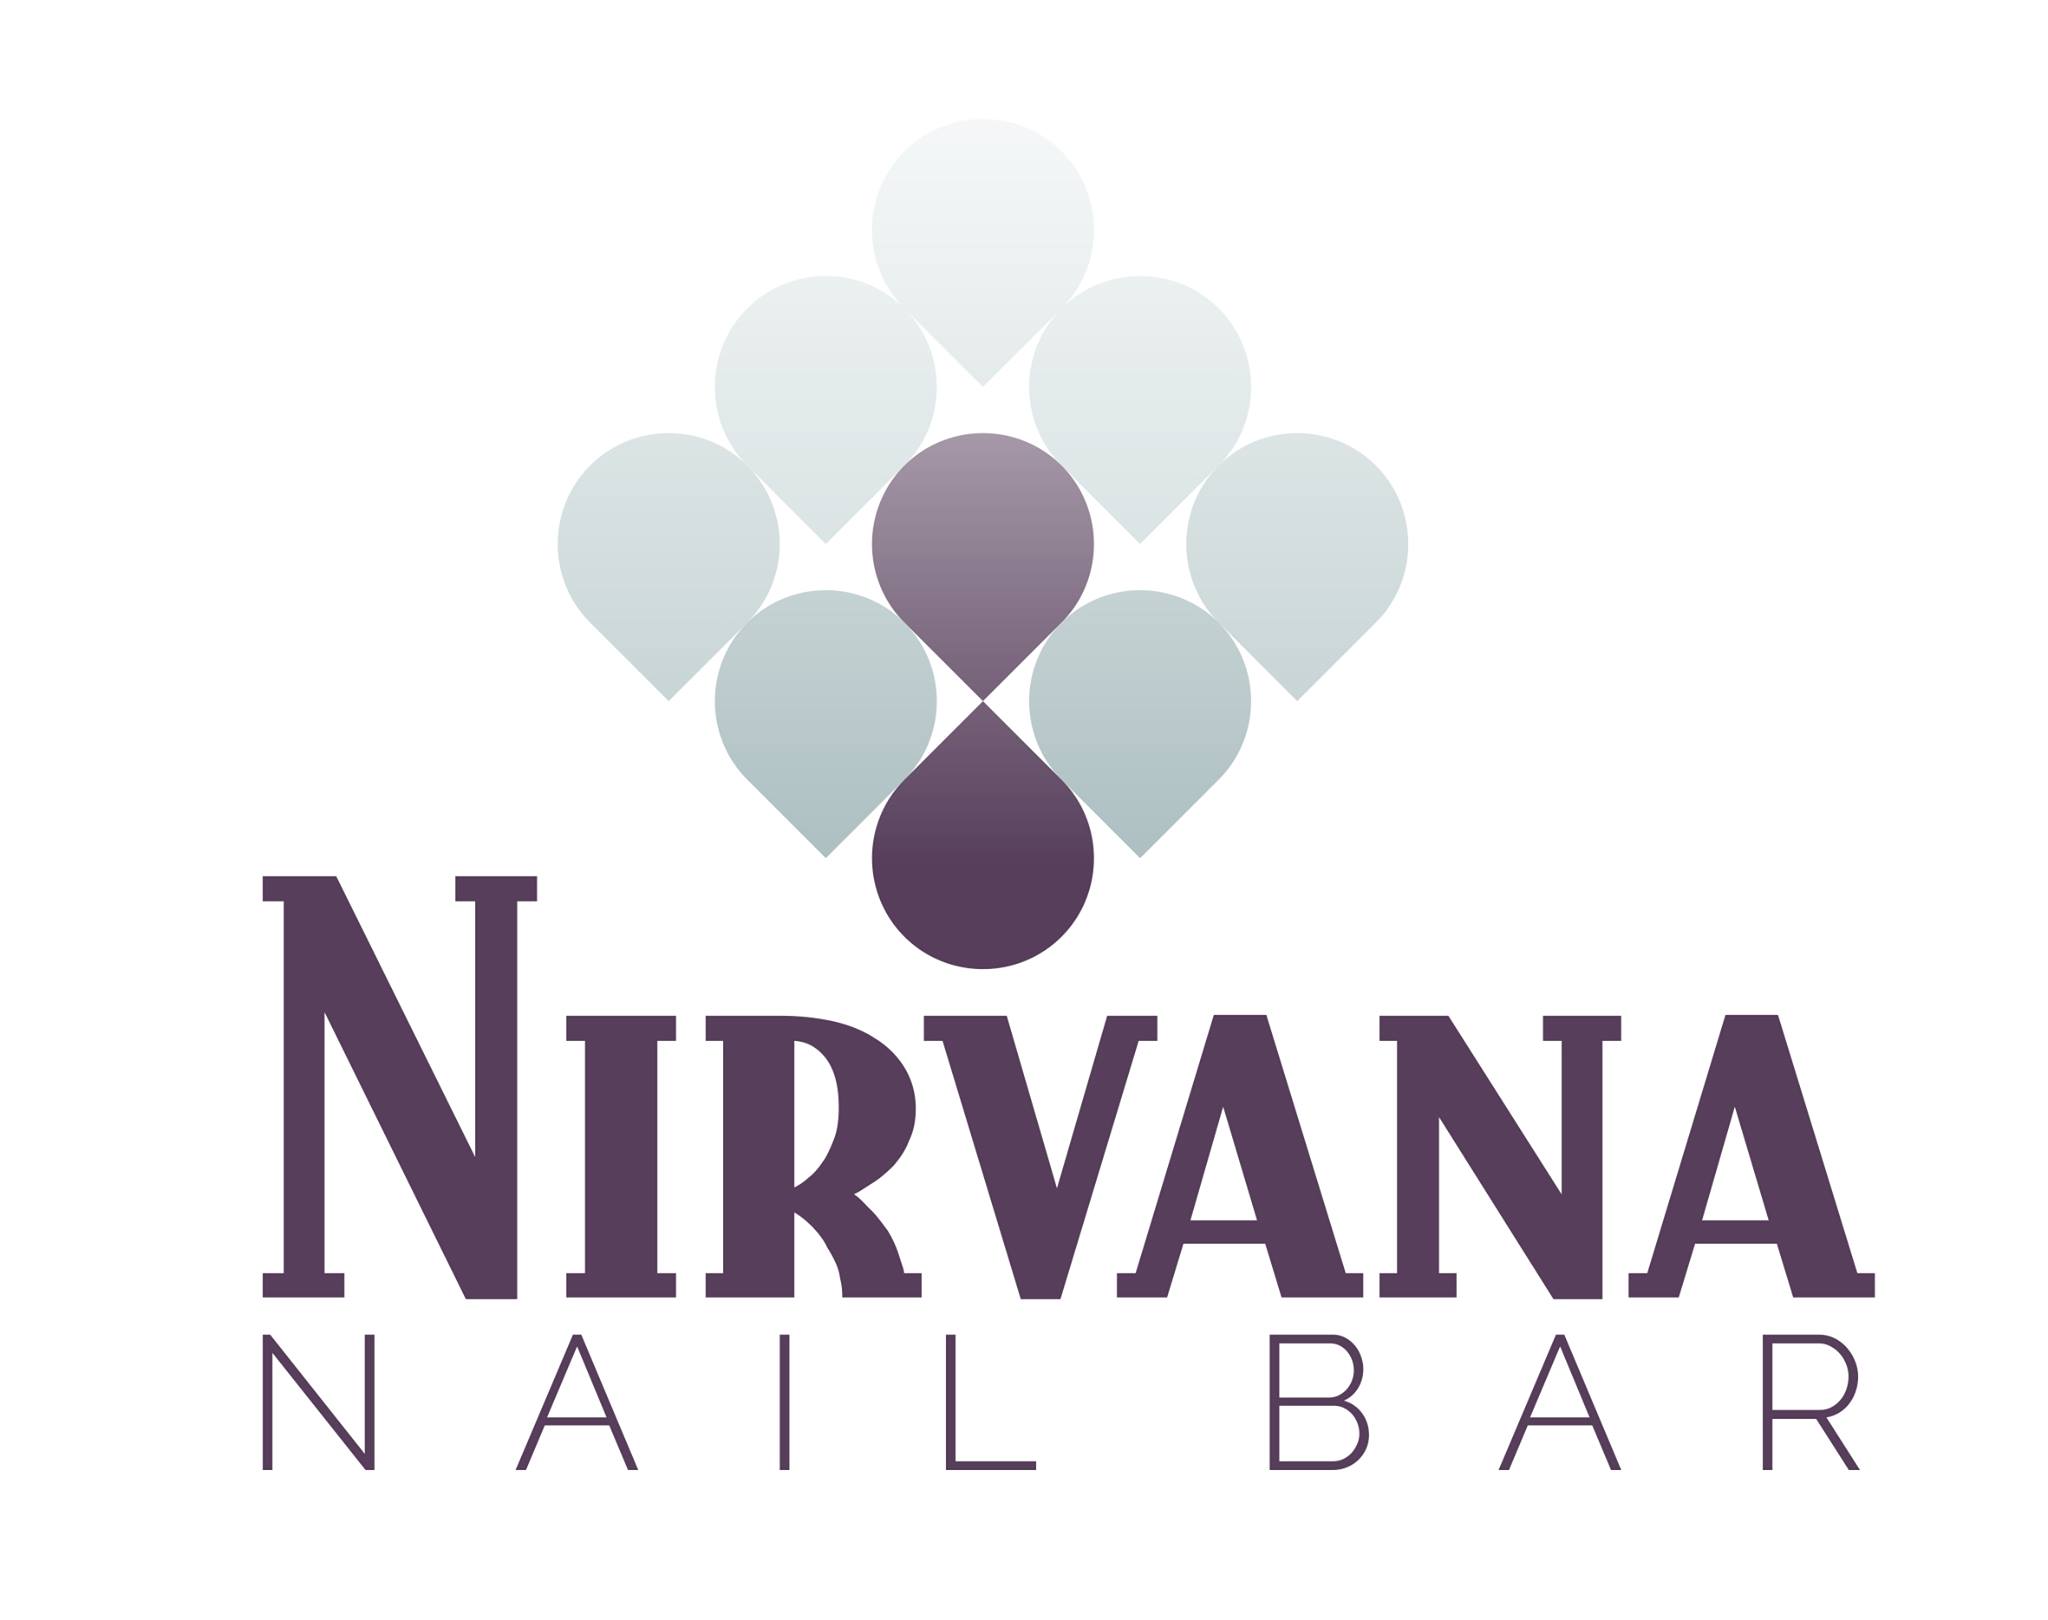 Nirvana Nail Bar logo